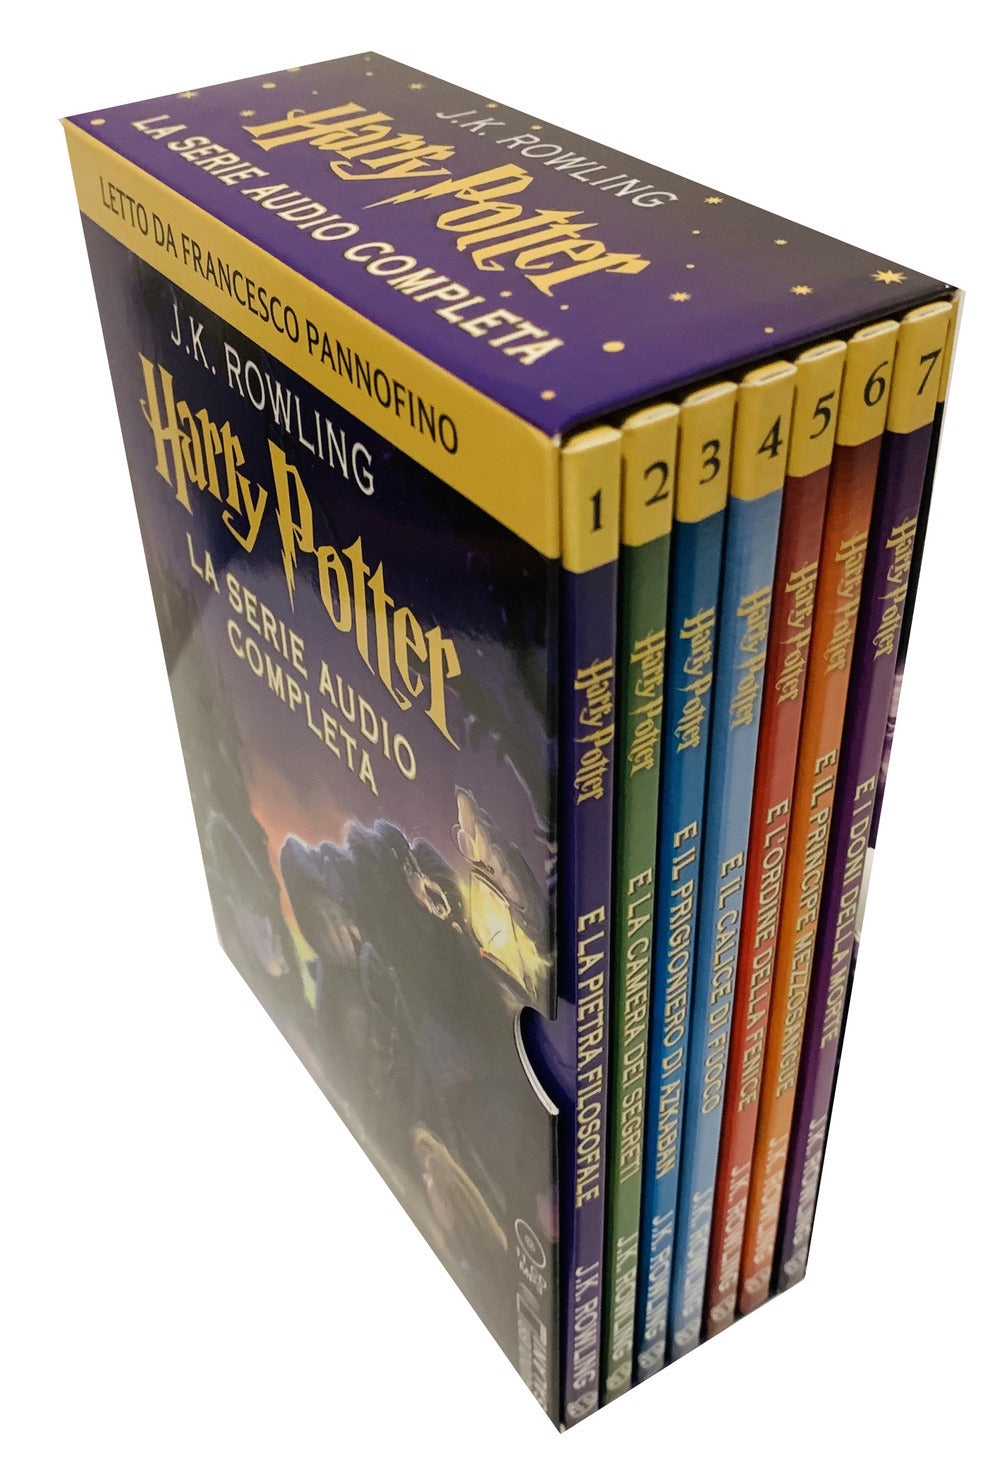 Harry Potter. La serie audio completa letta da Francesco Pannofino letto da Francesco Pannofino. Audiolibro. 11 CD Audio formato MP3.